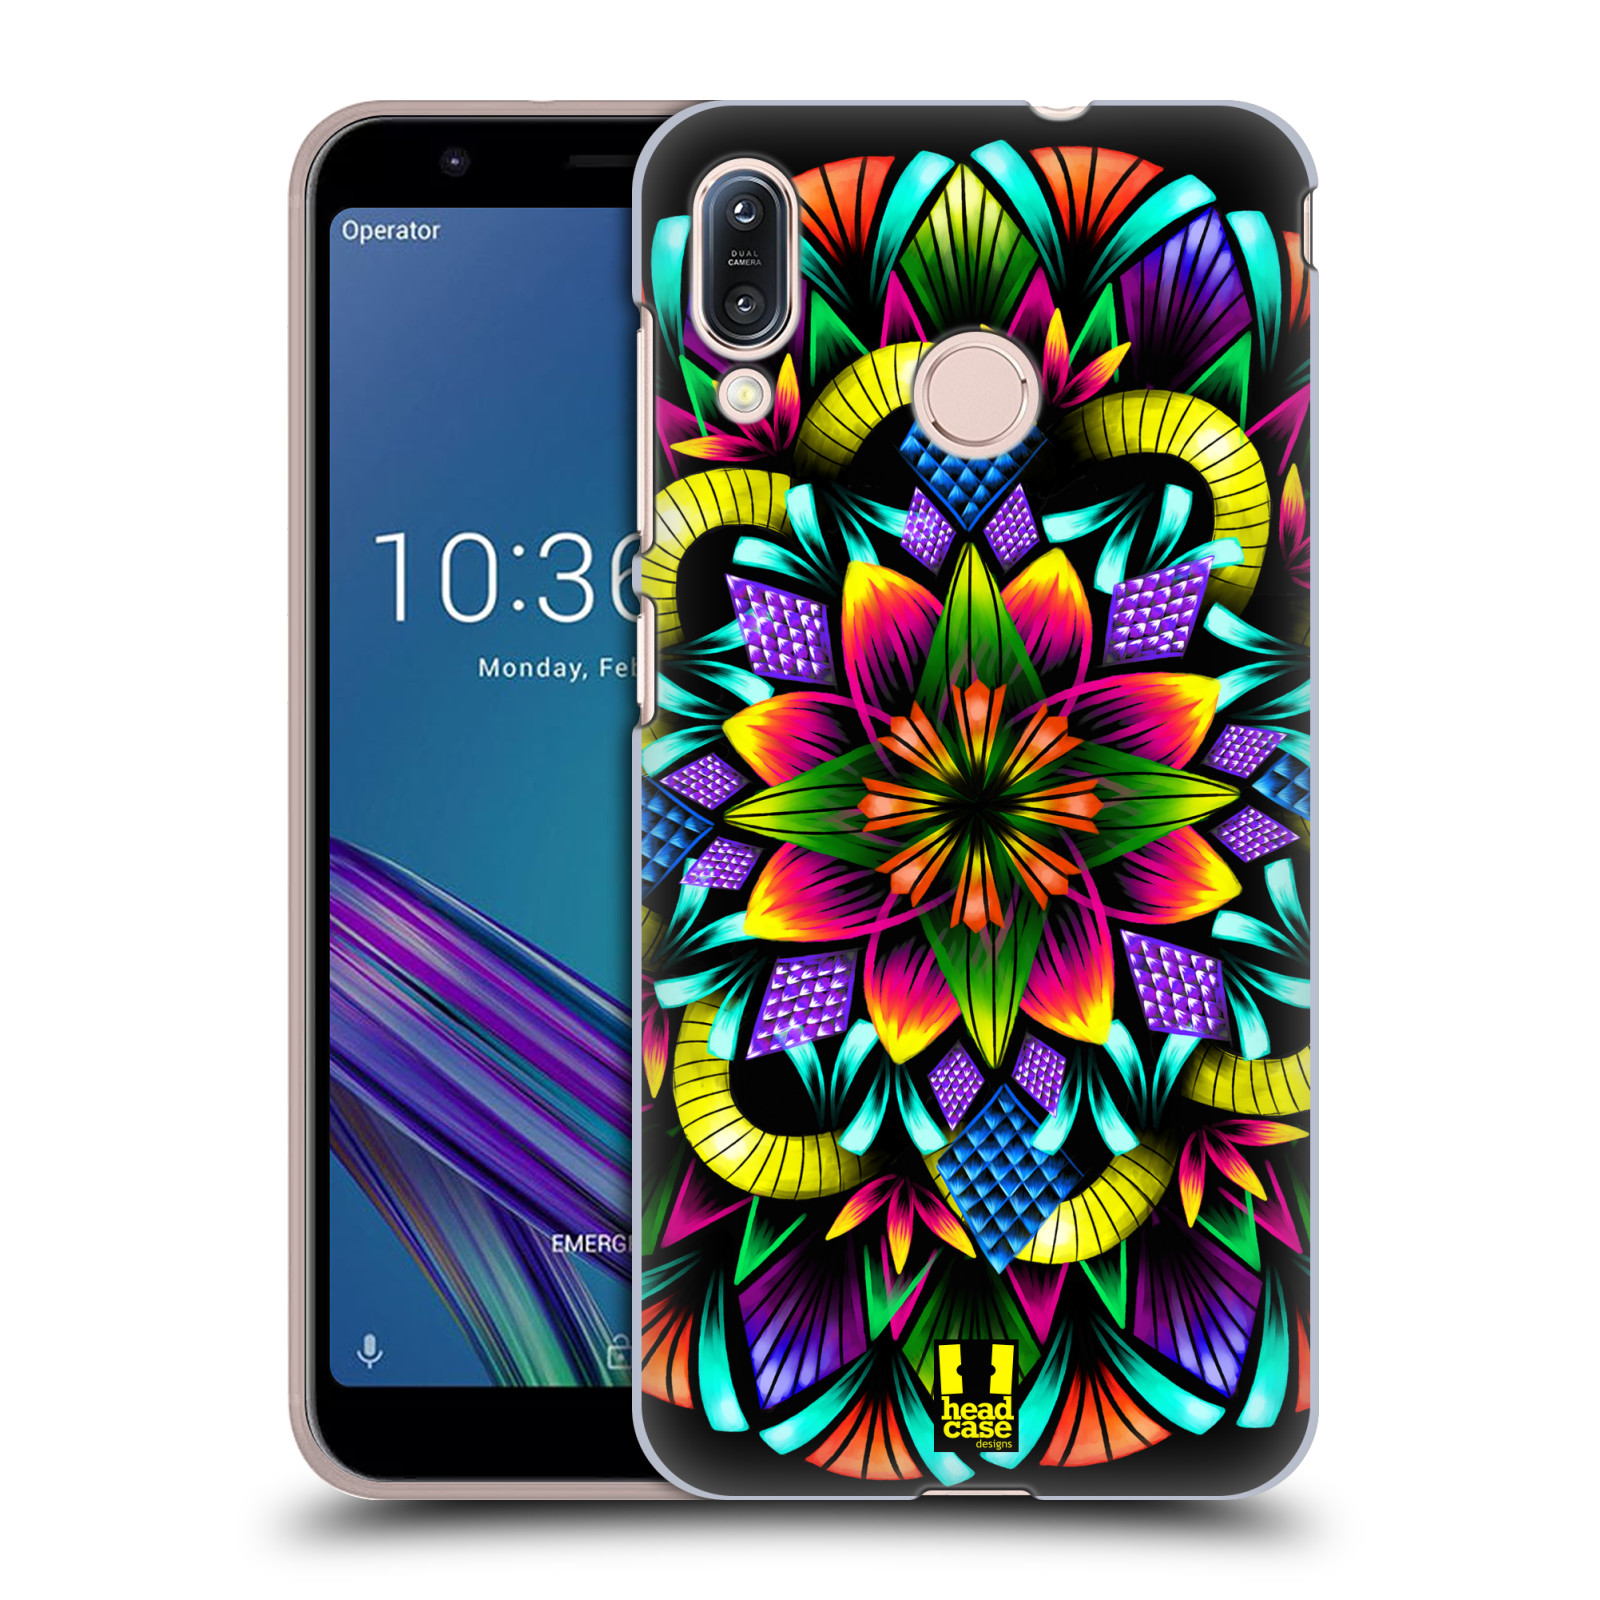 Pouzdro na mobil Asus Zenfone Max M1 (ZB555KL) - HEAD CASE - vzor Indie Mandala kaleidoskop barevný vzor KVĚTINA